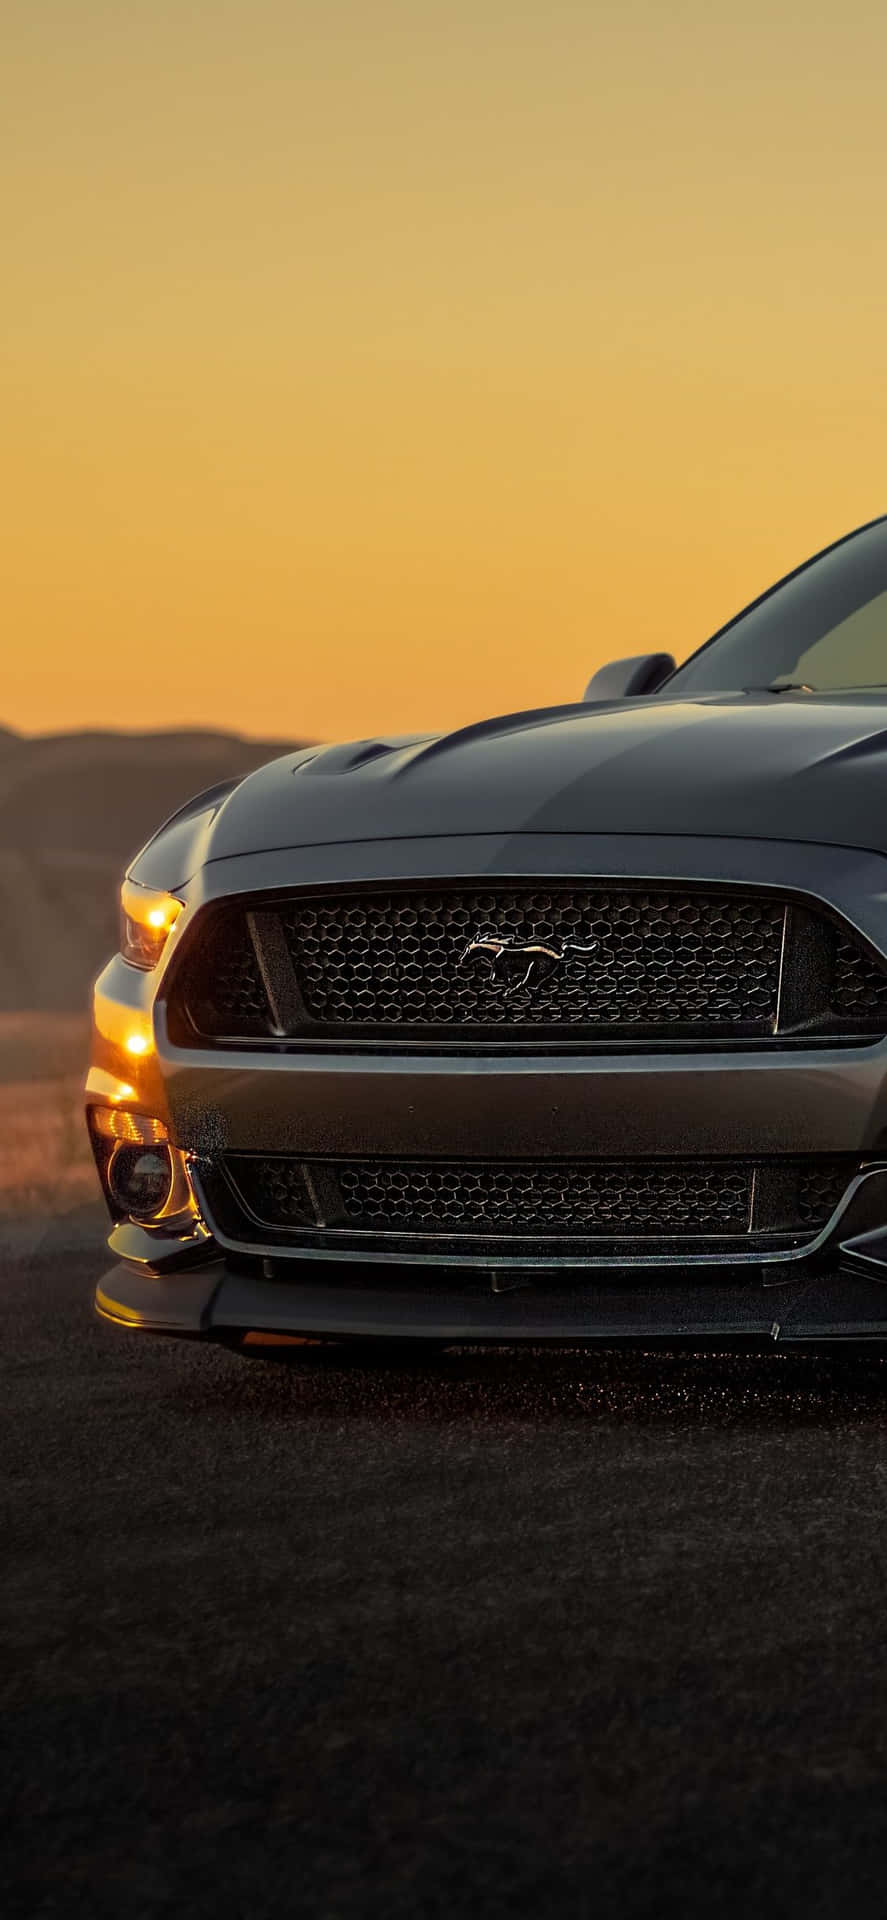 Holensie Sich Den Neuesten Ford Mustang Auf Ihr Handy Wallpaper